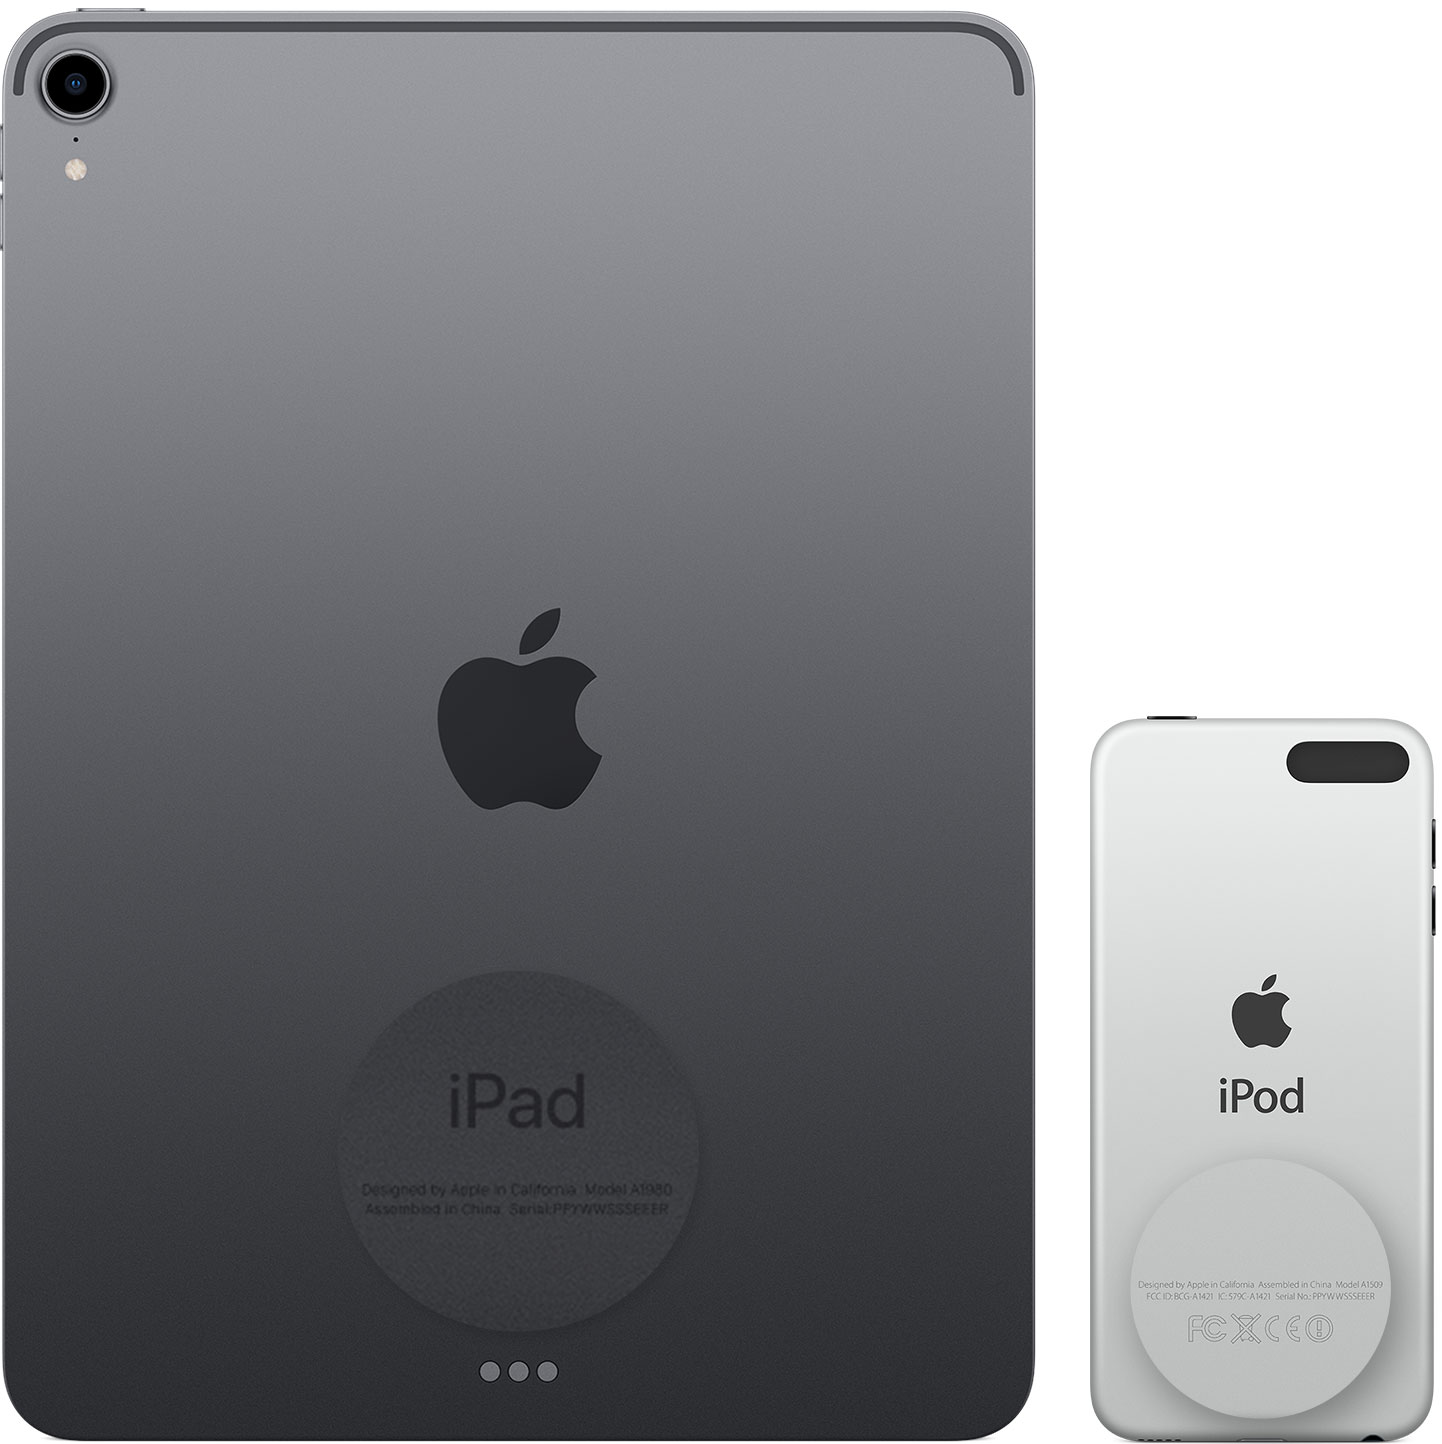 iPad および iPod touch の背面